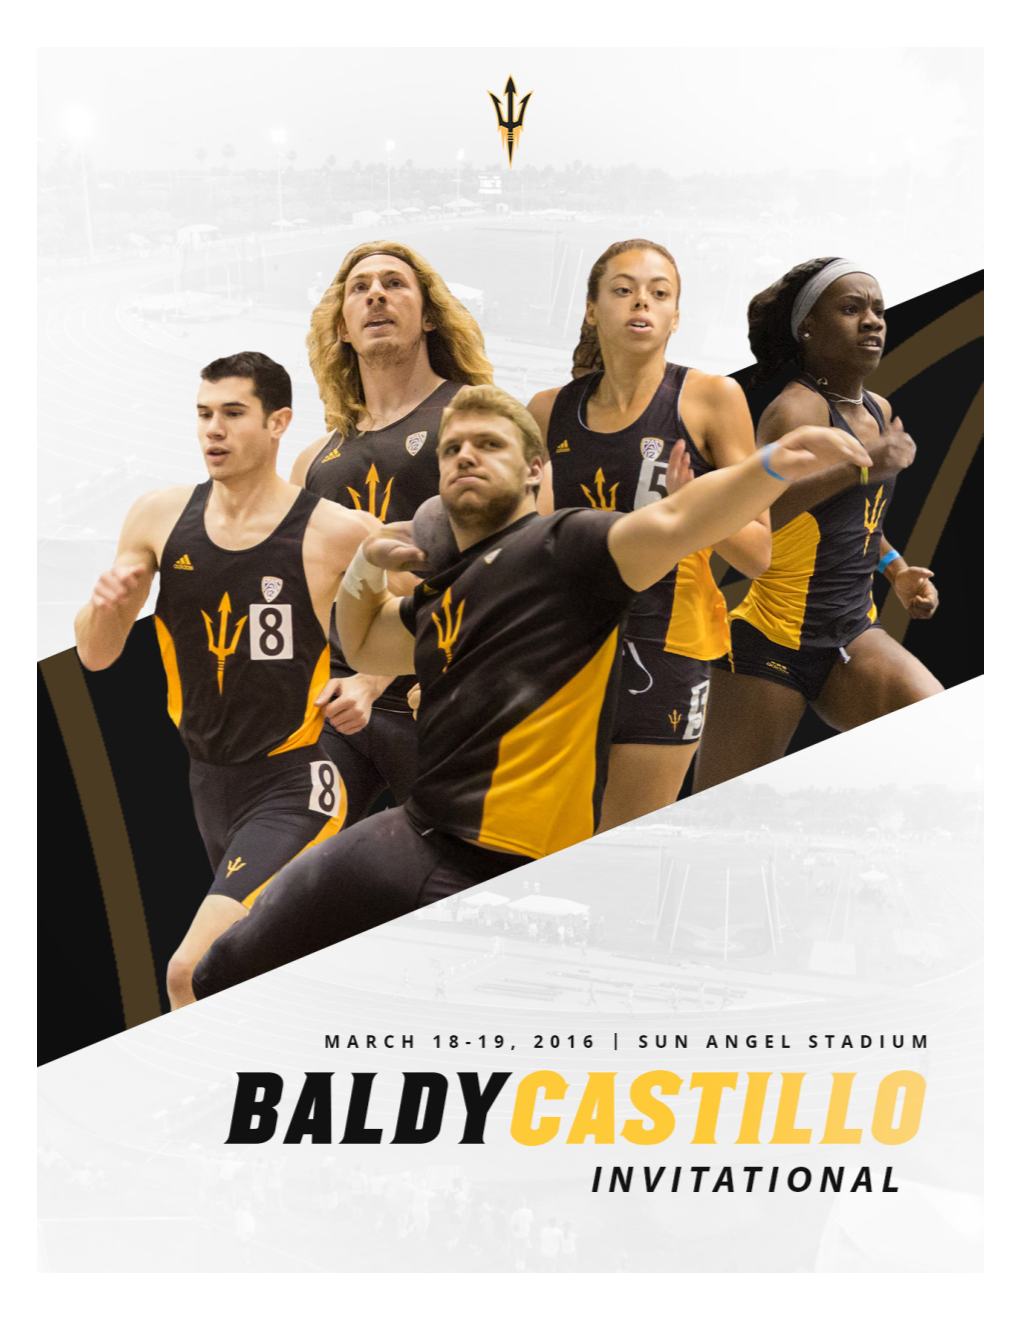 'Baldy' Castillo